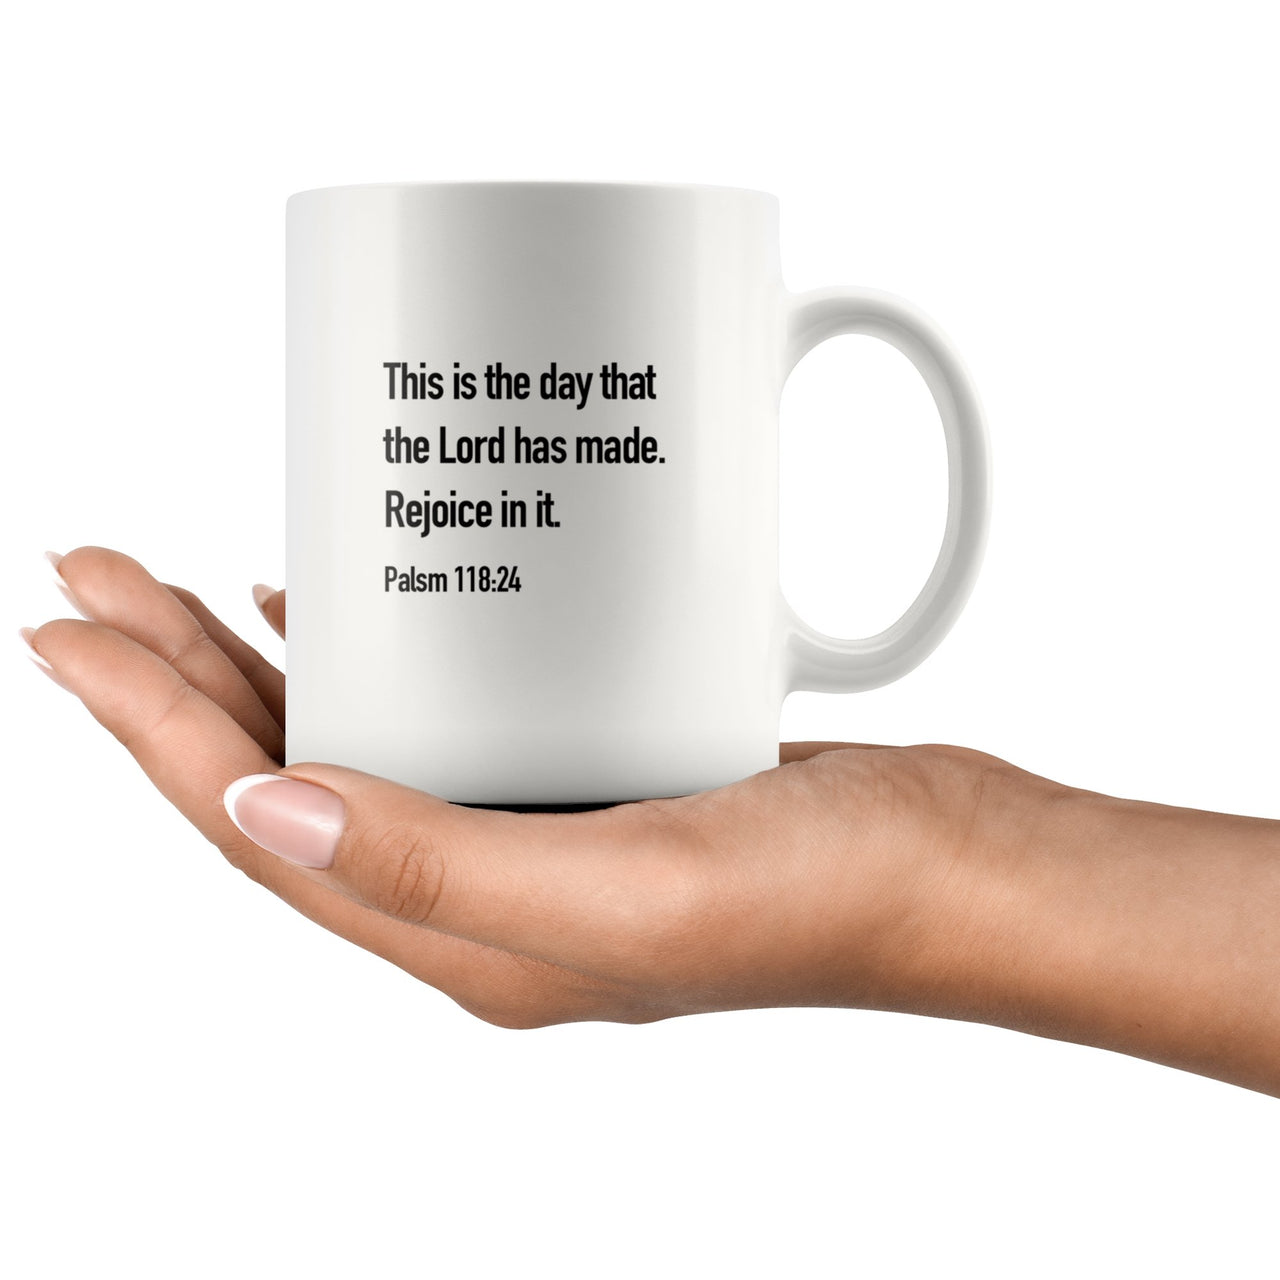 Palsm 118:24 Mug